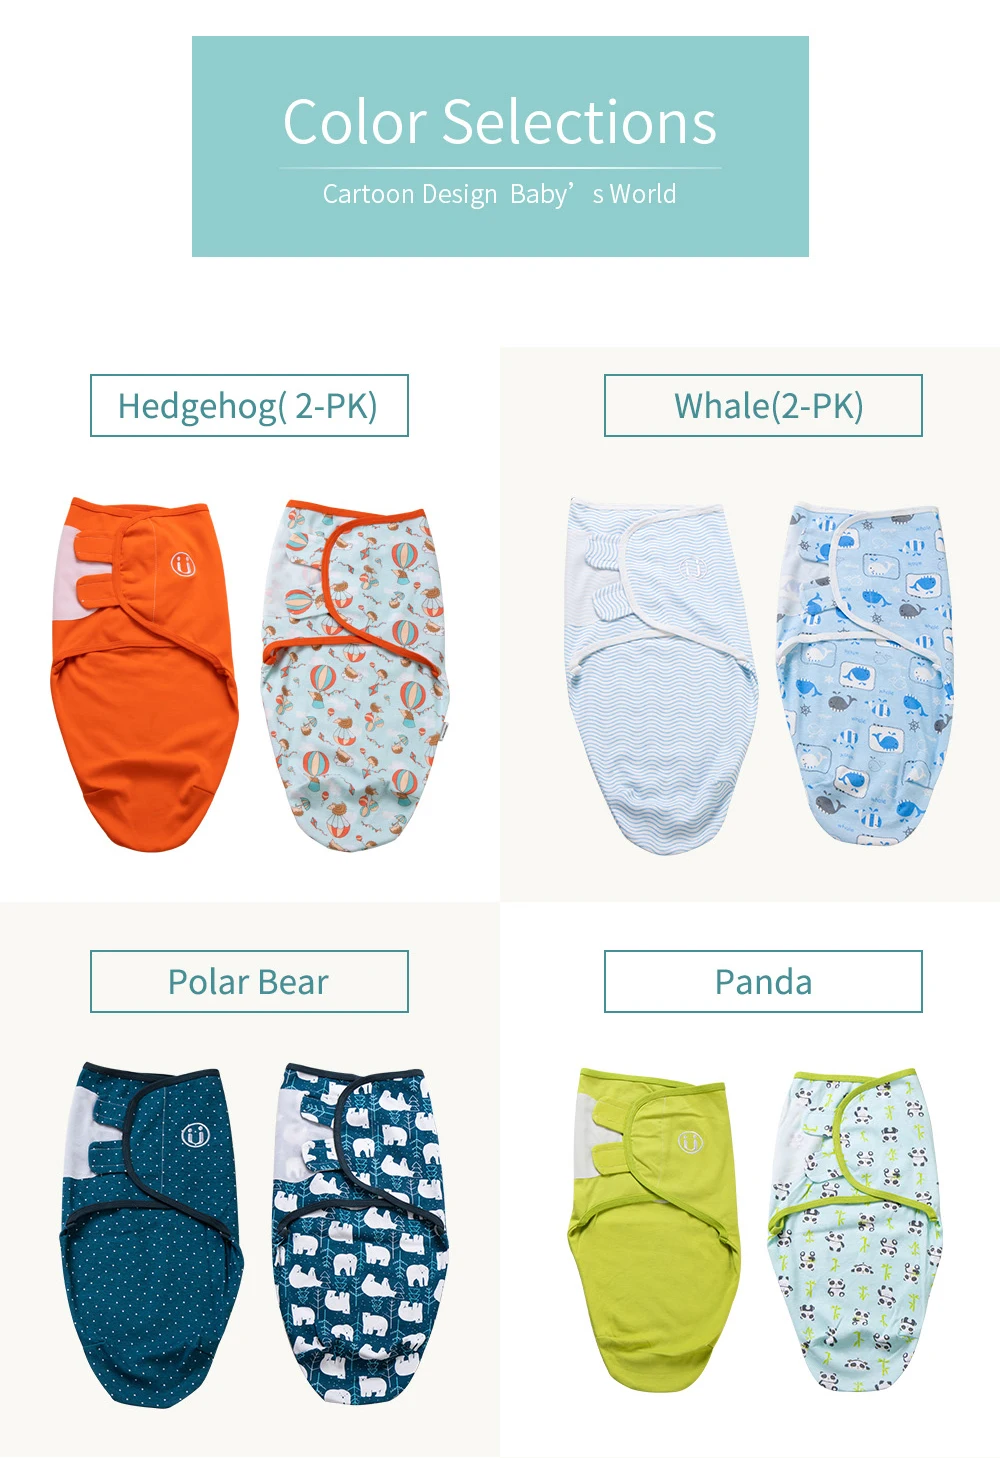 INSULAR 2 шт./компл. 5-7 месяцев детское Пеленальное Одеяло для новорожденных Регулируемая пеленка для младенцев мягкий хлопковый спальный мешок многоцветный